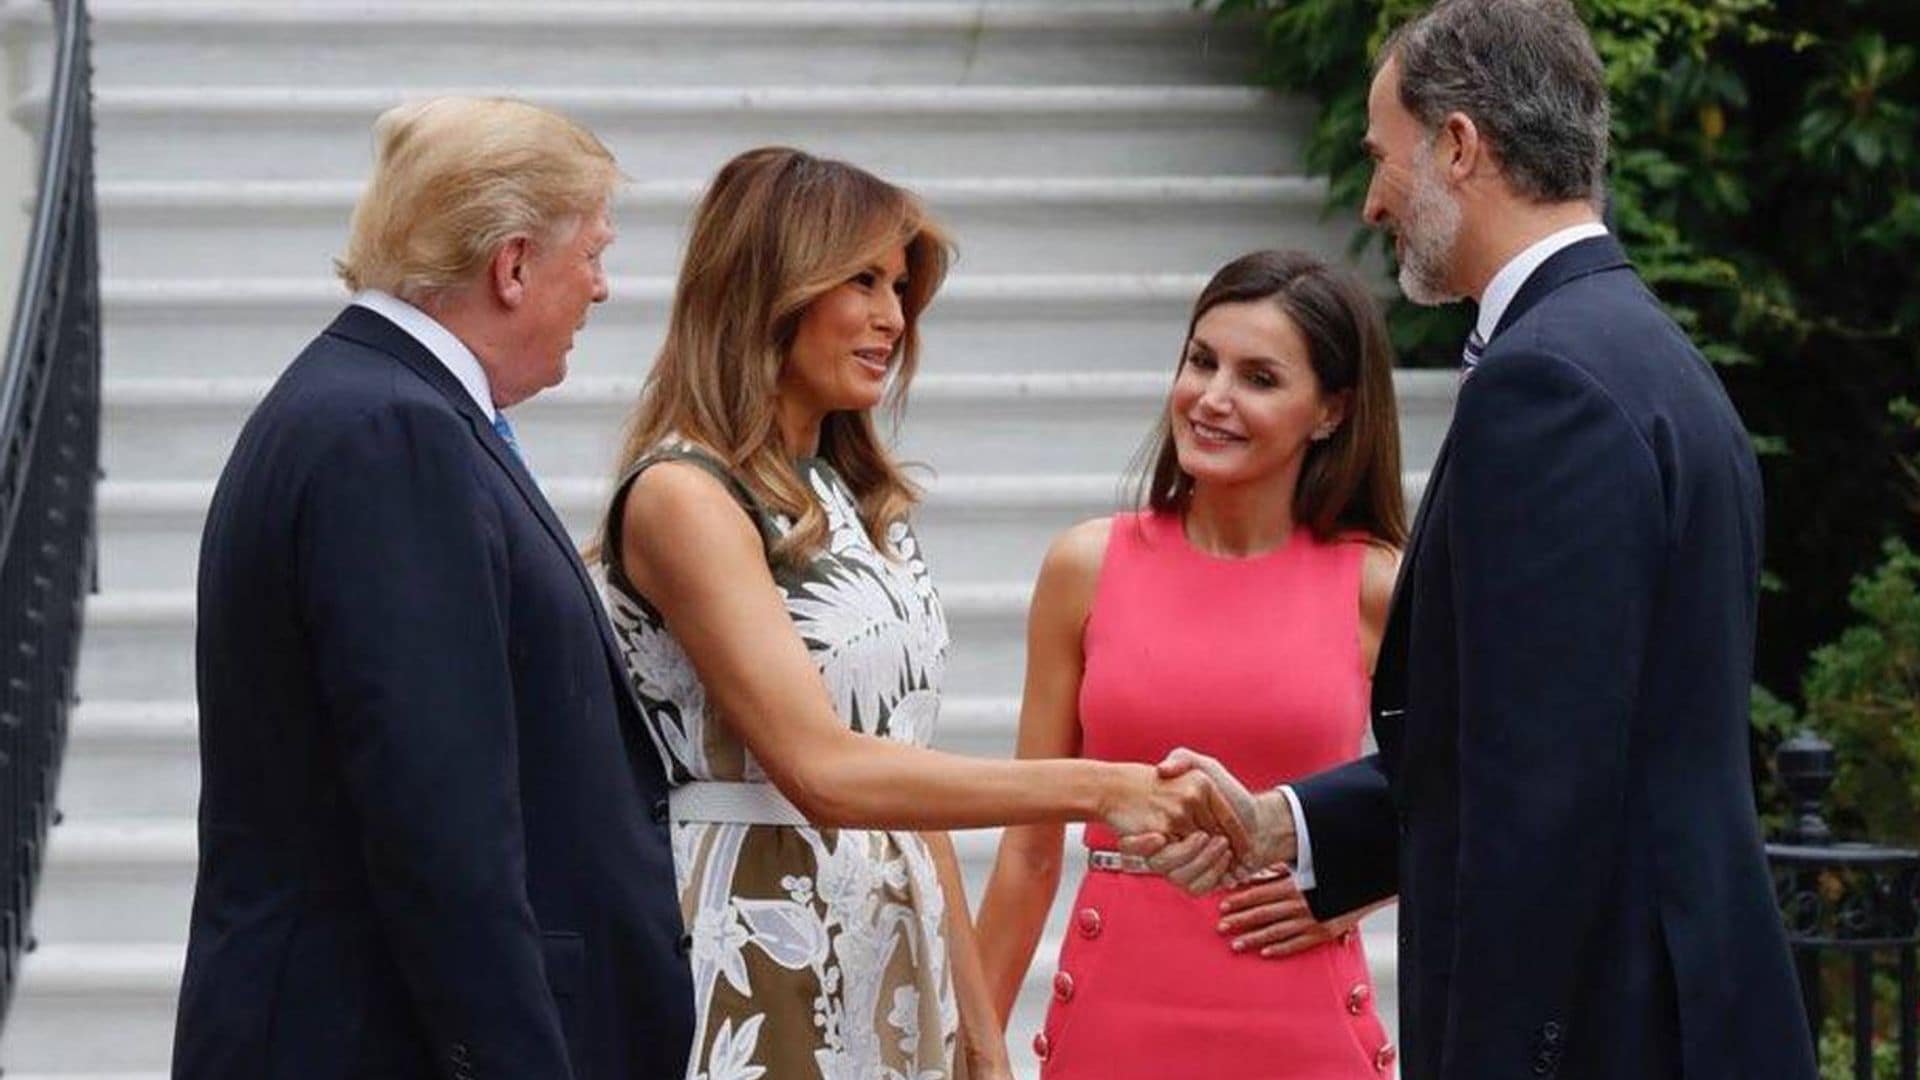 Donald Trump quiere cenar en la Casa Blanca con los Reyes y con otro español muy querido